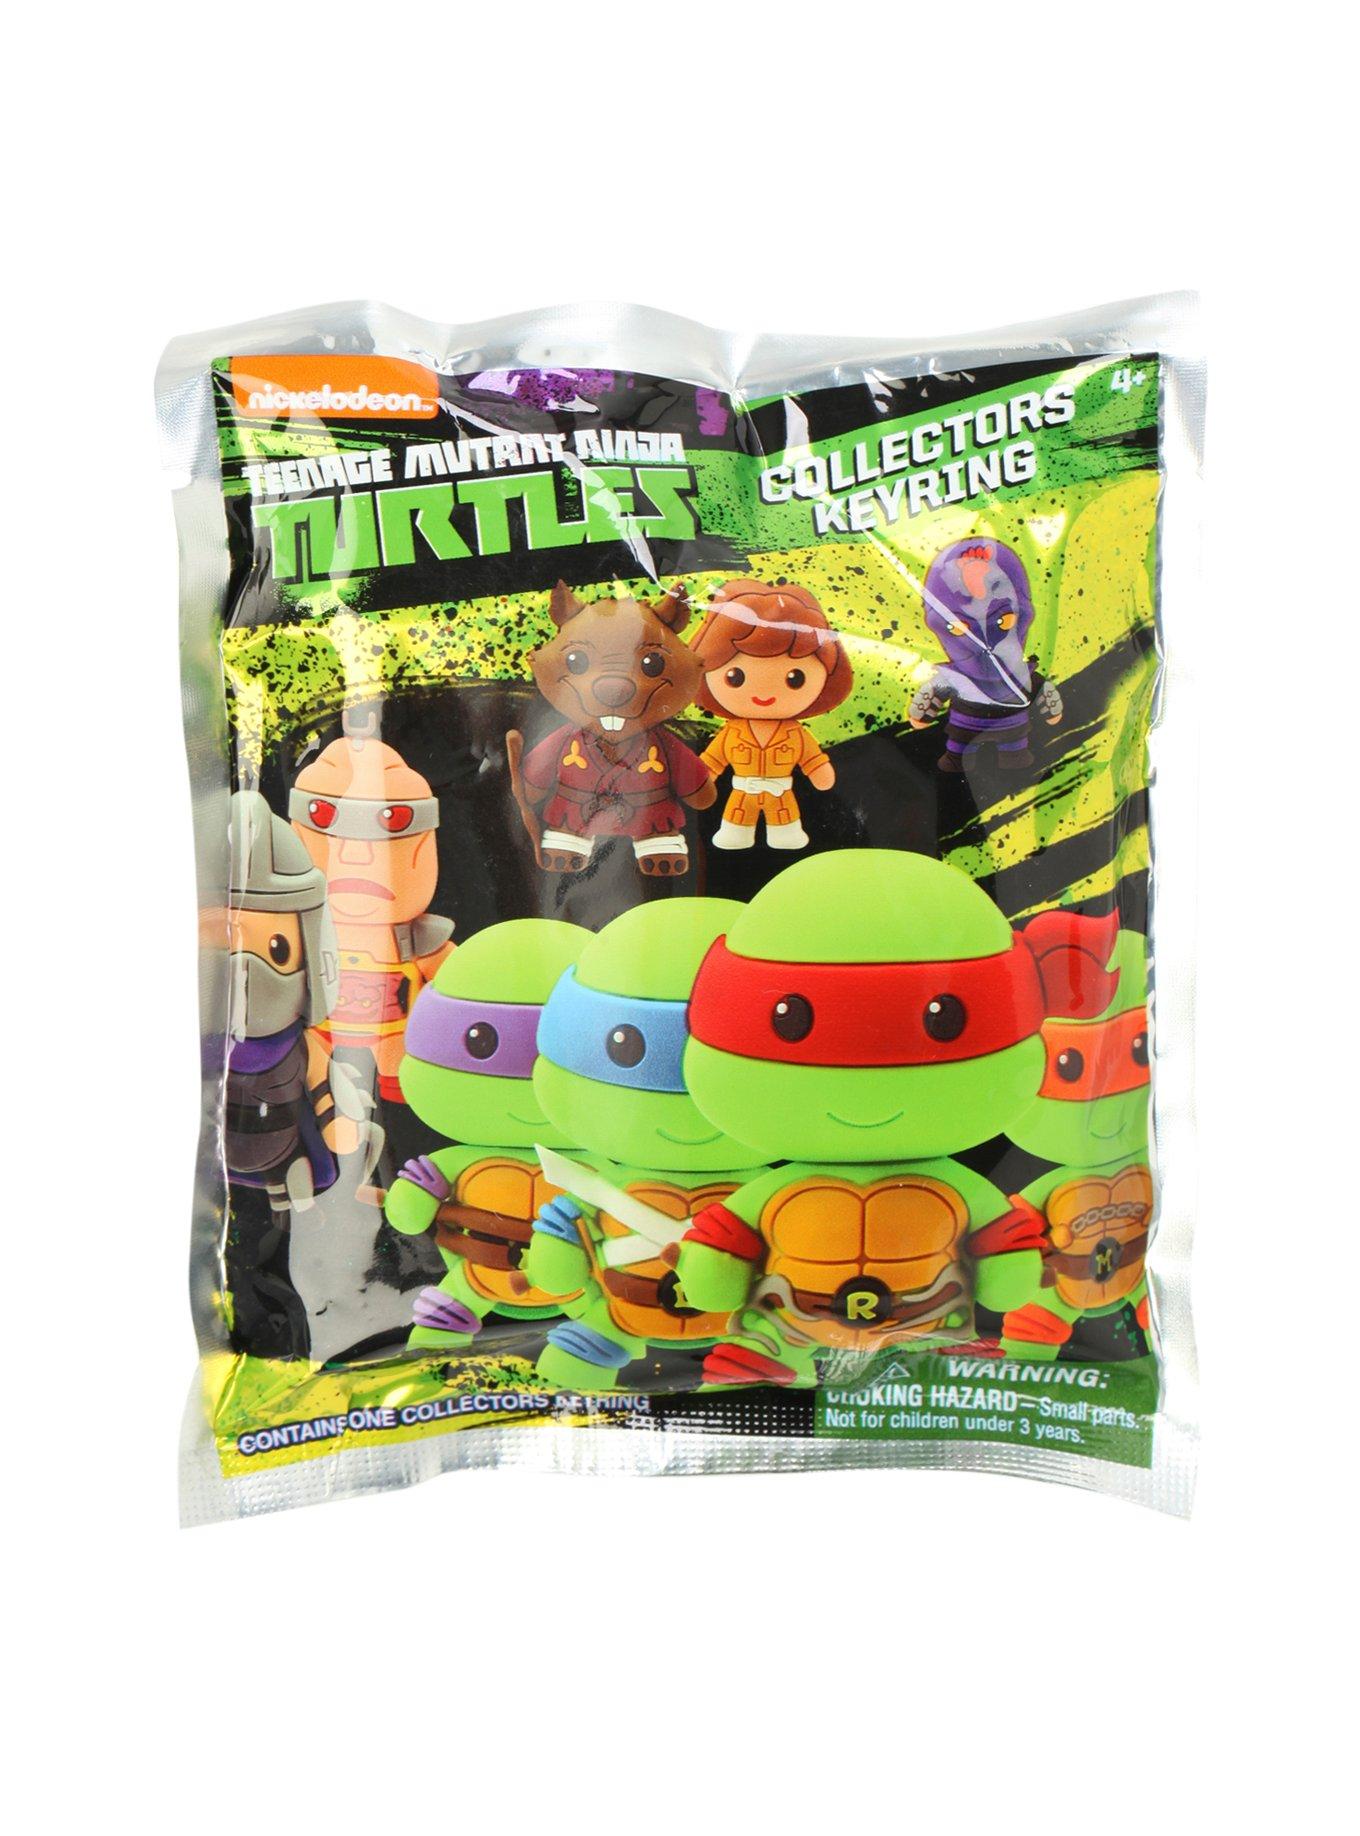 NIP Teenage Mutant Ninja Turtles Blind Bag Series 3---Lot of 5 